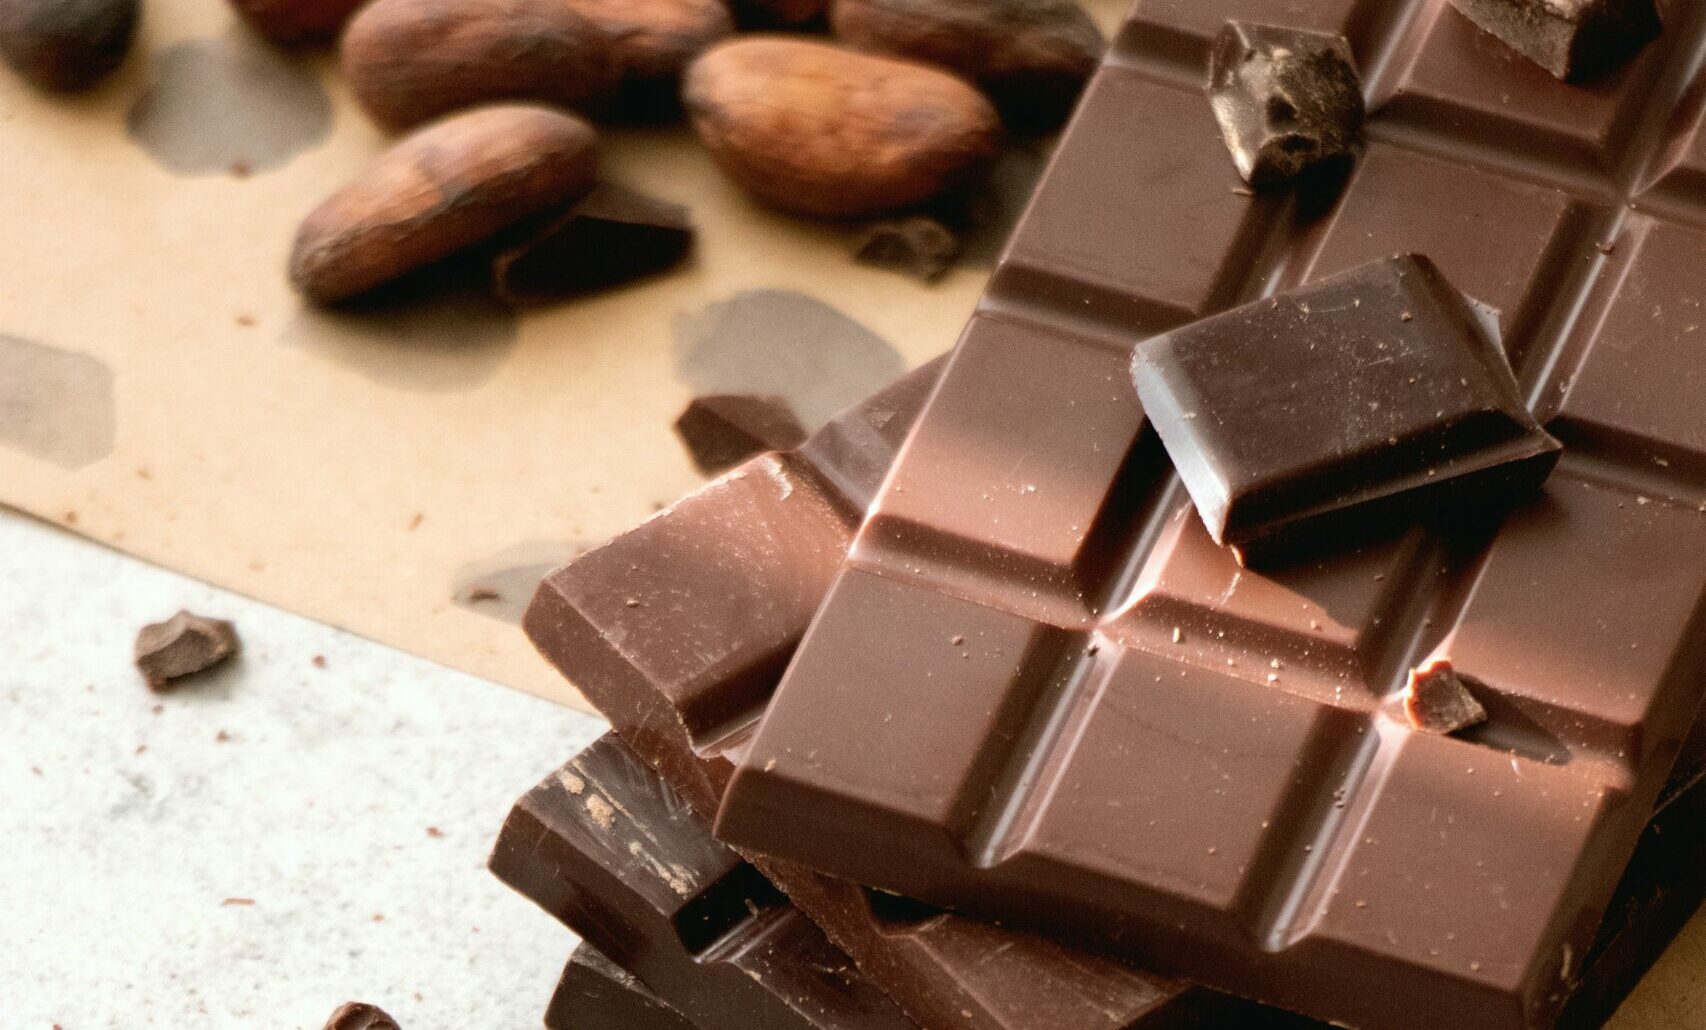 Chocolate na Páscoa: 5 dicas para não abusar e passar mal